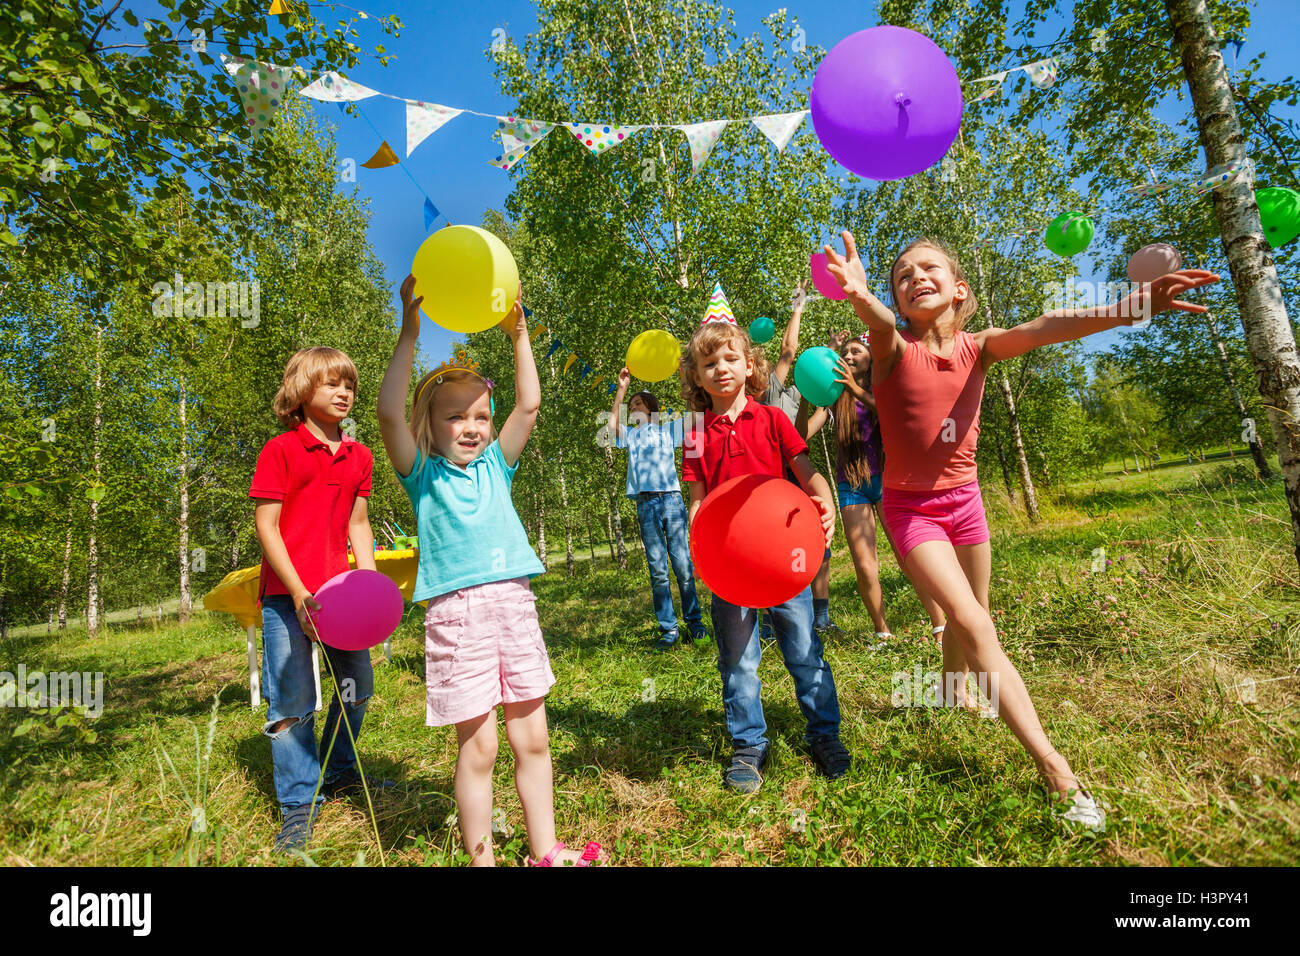 Les enfants jouent drôle de jeu avec des ballons colorés Banque D'Images